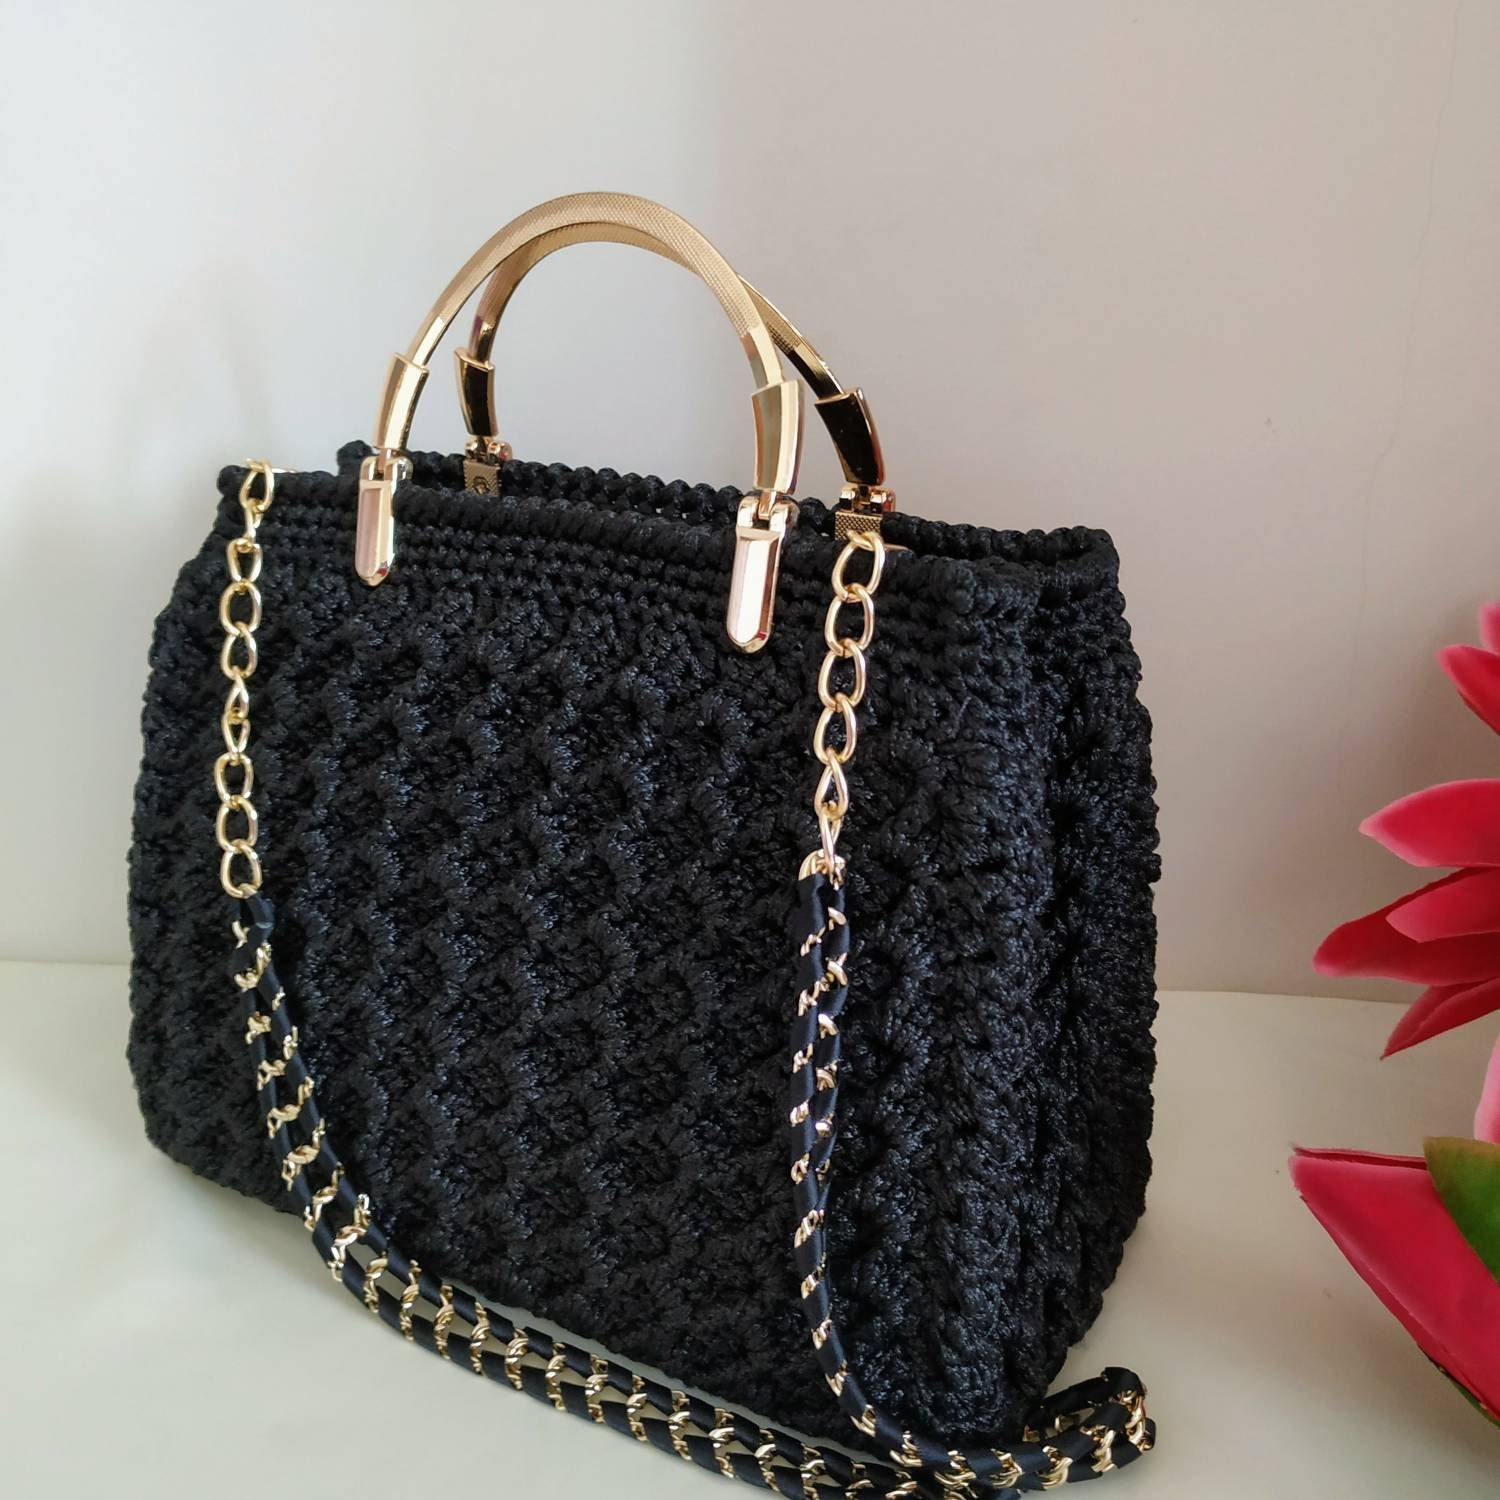 Handmade Beige Luxury Crochet Knitting Backpack, Crochet Project Bag Gift  for Her, Crochet Bag Pattern, Craft Bag, Hand Woven Bag, Women Bag 